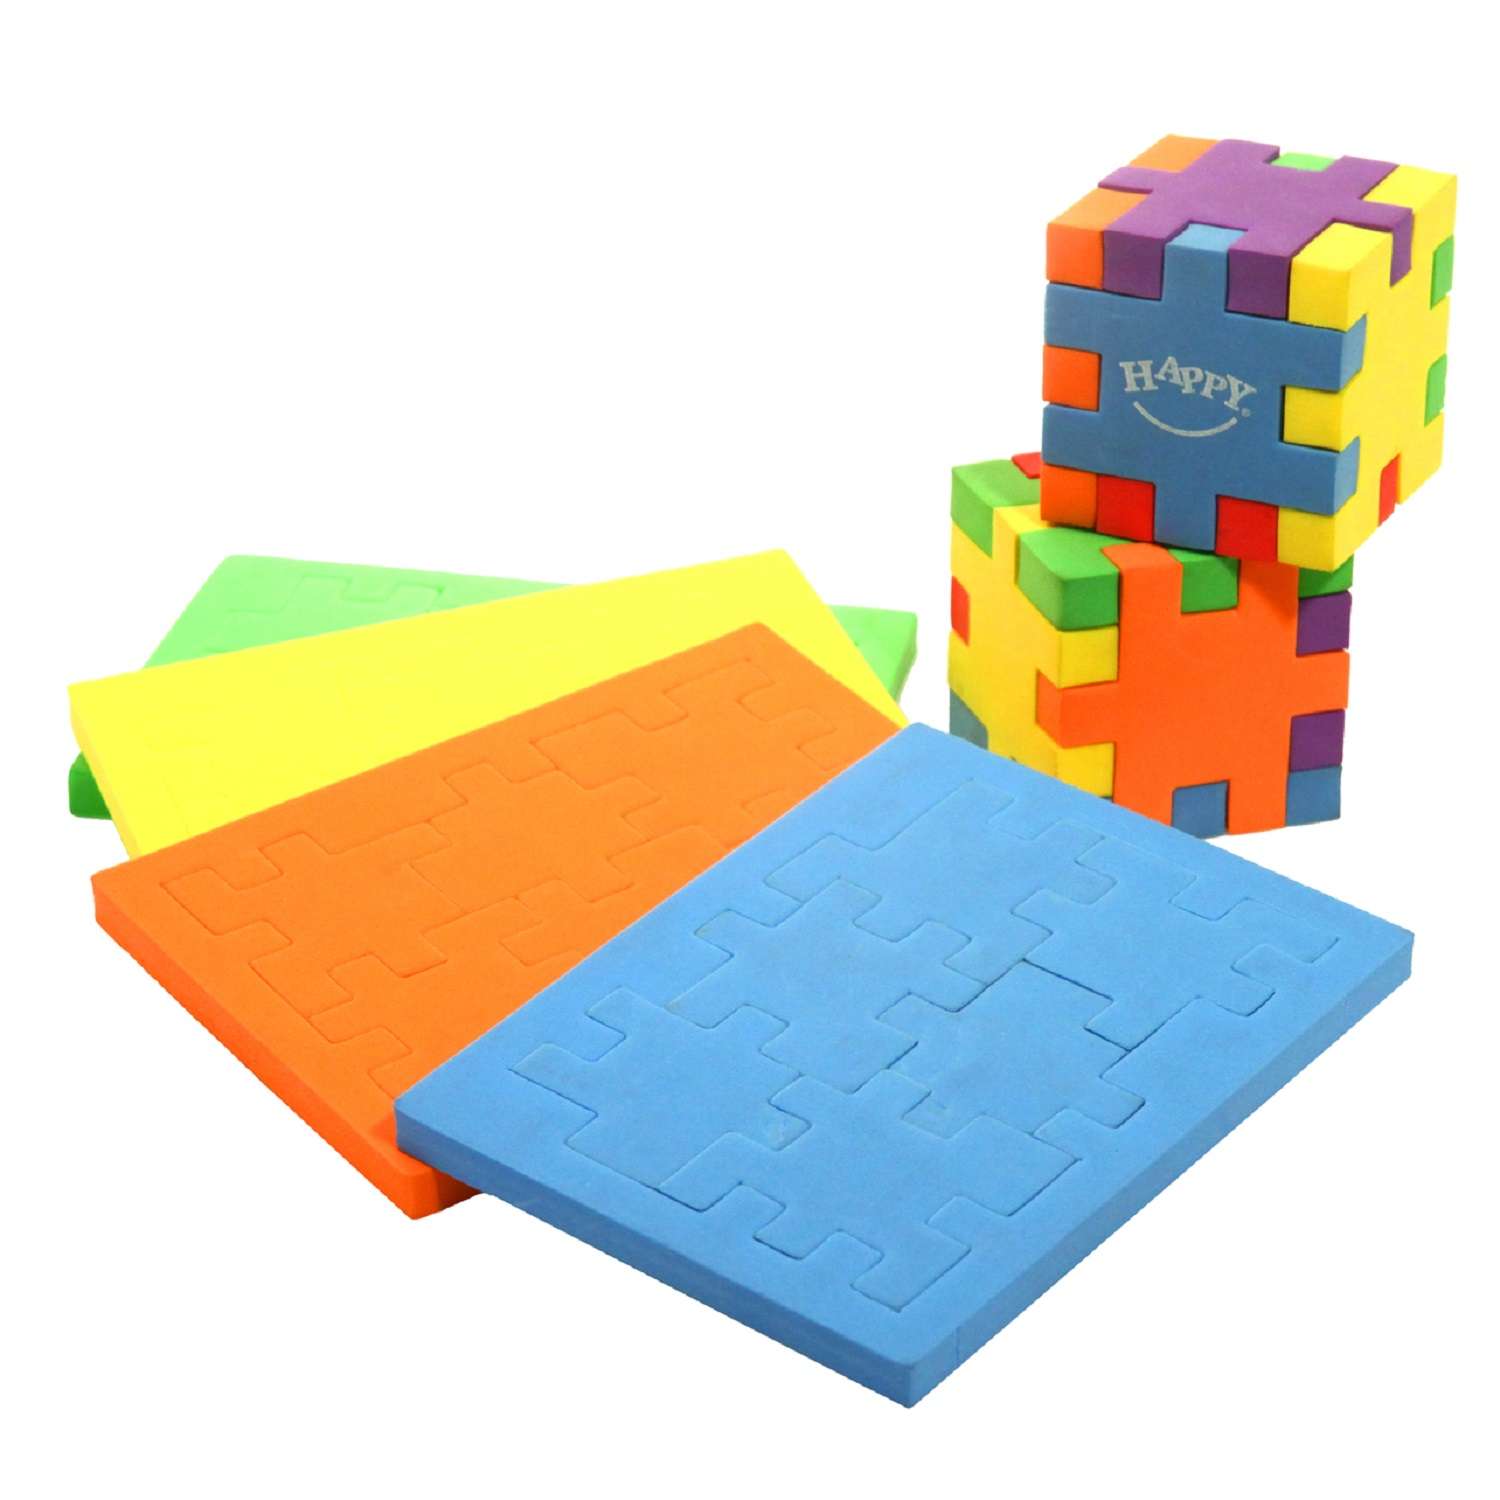 Пазл-головоломка HAPPY Смарт куб 6 пазловв+15 карточек - фото 2